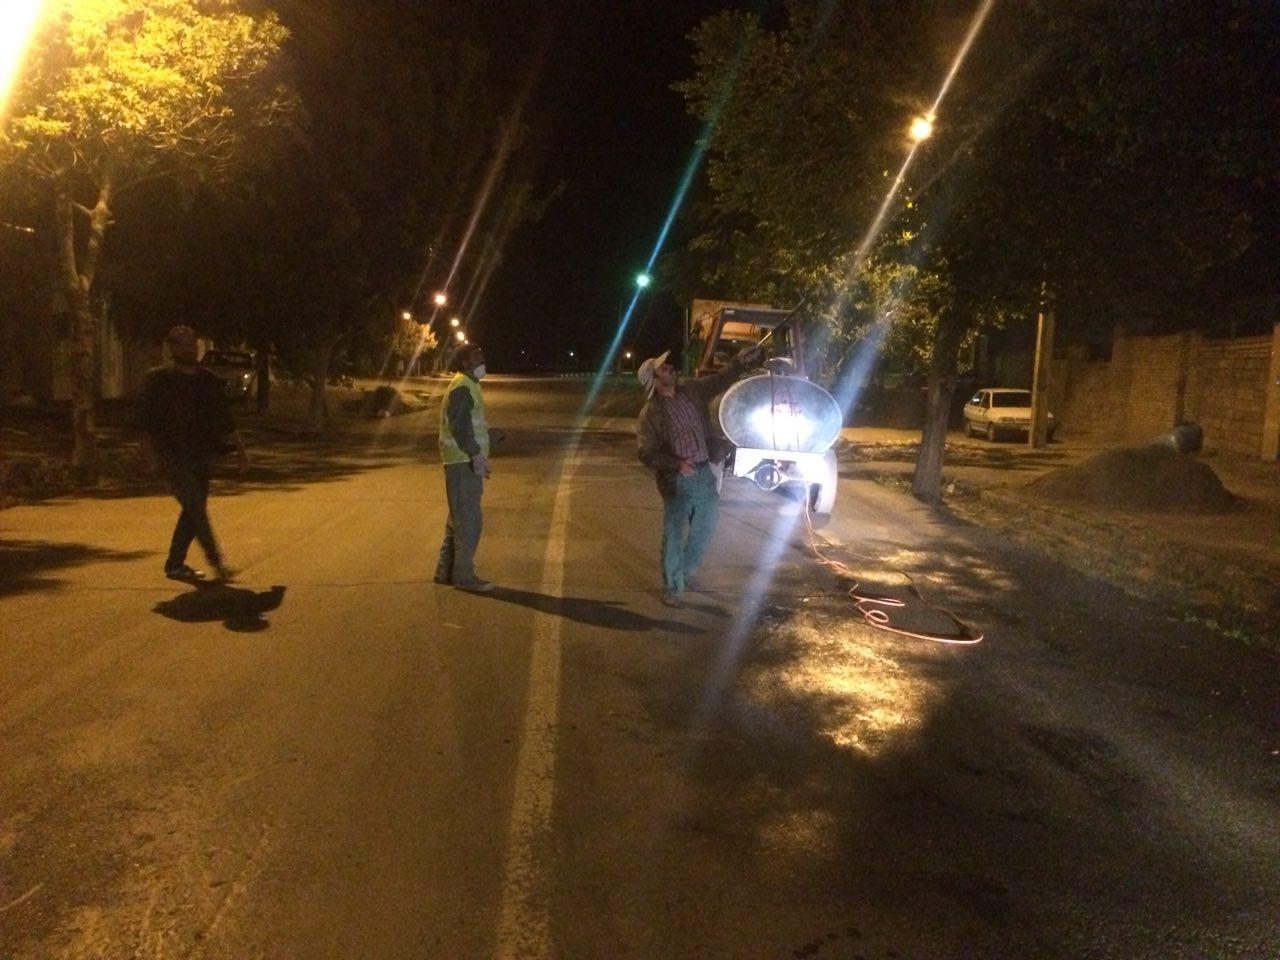 اطلاعیه به اطلاع همشهریان عزیز می رساند شهرداری امشب در حال سم پاشی درختان خیابان امام خمینی (ره) می باشد.